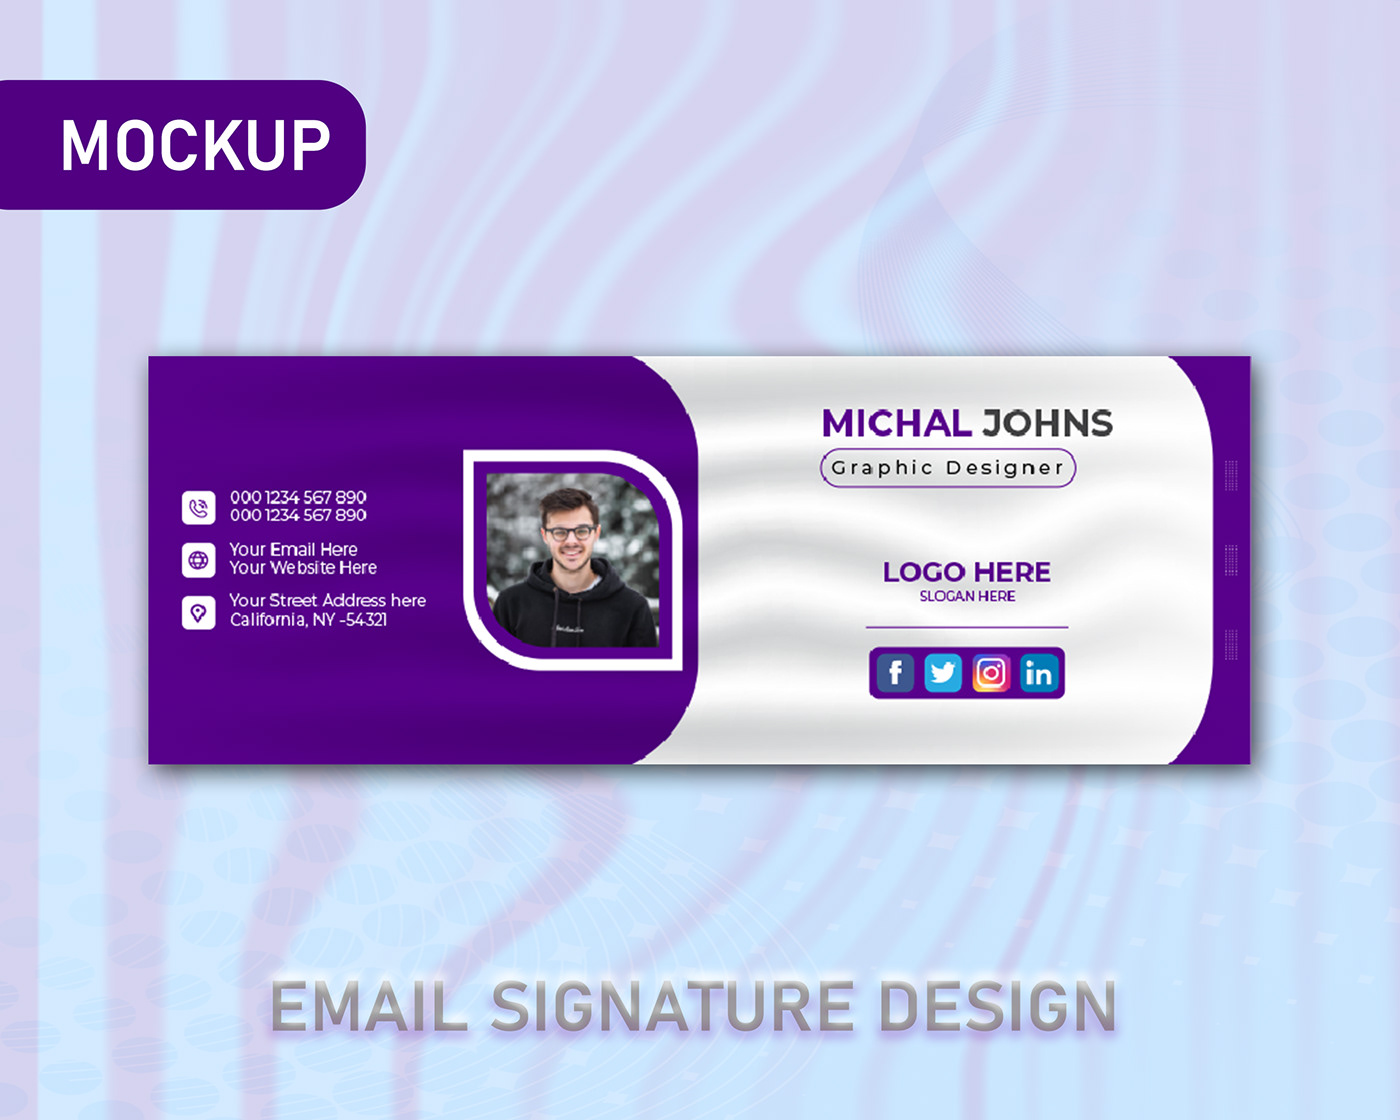 email signature design Corporate Design Creative Design marketing   modern email signature design Graphic Designer professional corporate